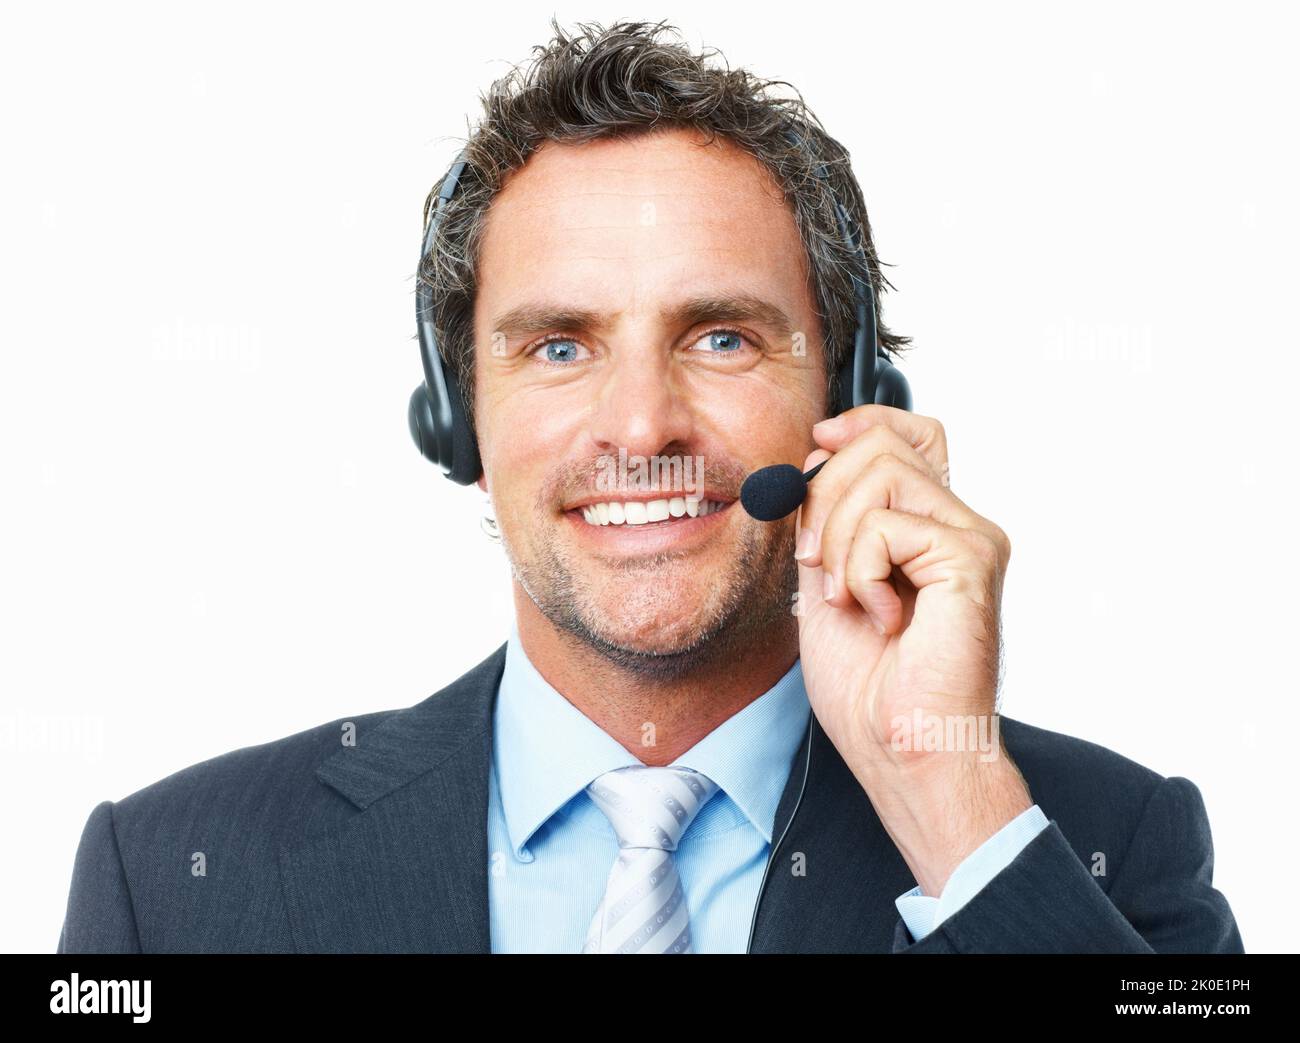 Lächelnder Bediener. Nahaufnahme eines intelligenten, reifen Bedieners, der auf einem Headset vor weißem Hintergrund spricht. Stockfoto